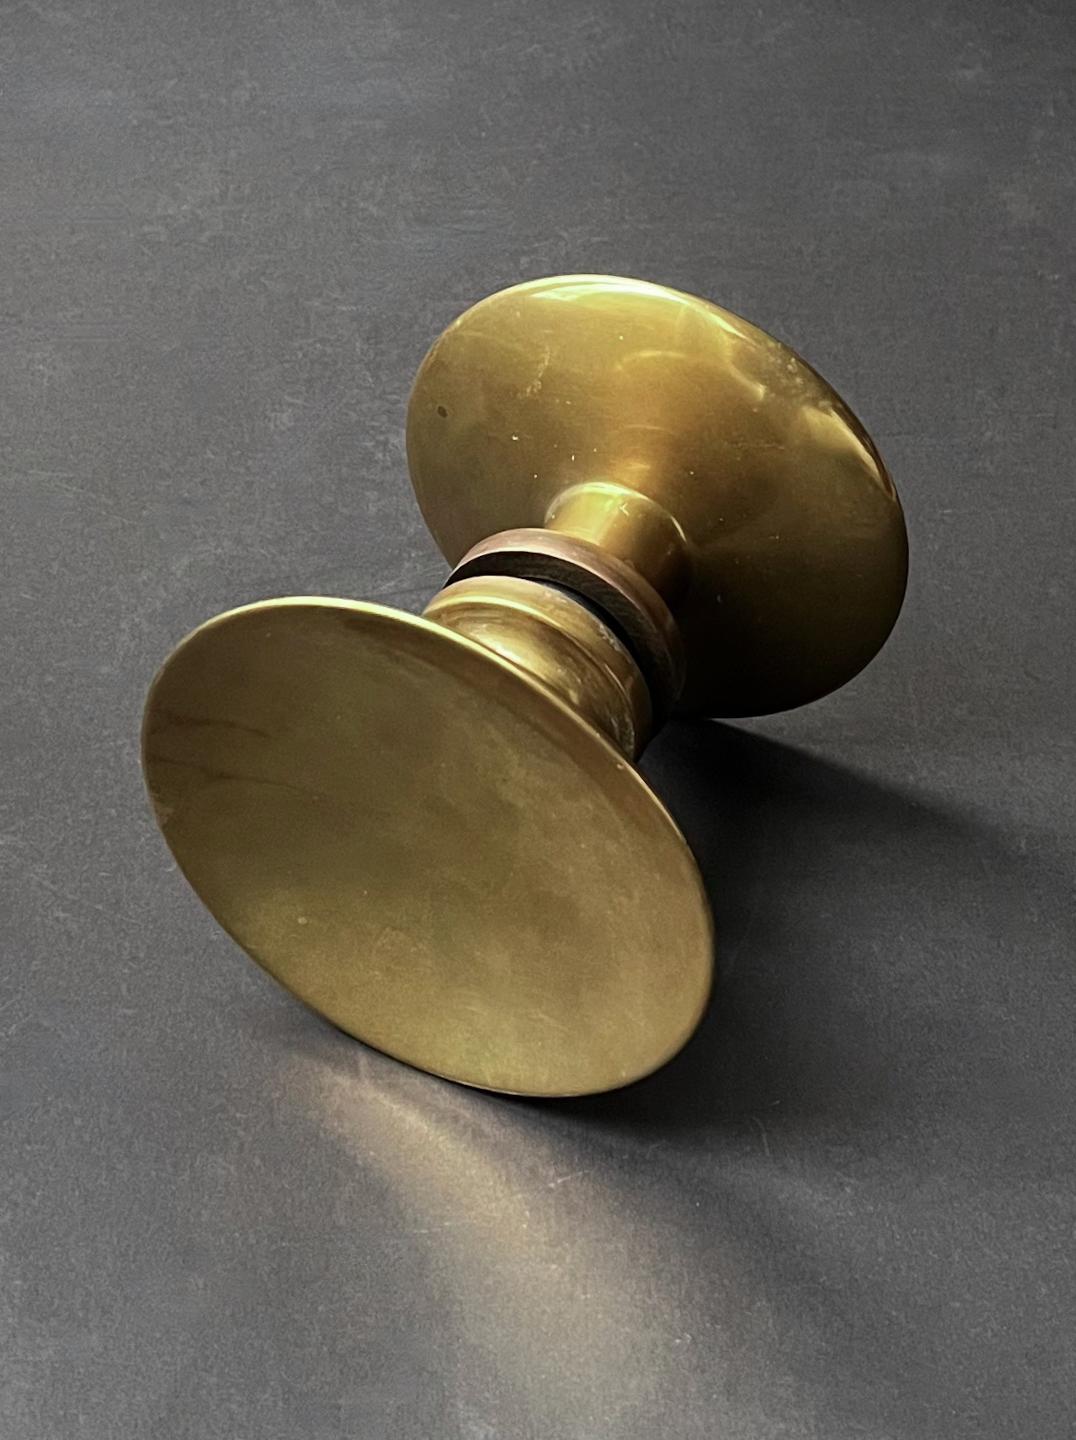 Runder Türdrücker aus Bronze, Mitte des 20. Jahrhunderts, Frankreich.

Ein schlichter, eleganter Griff, der aus zwei separaten, runden Teilen besteht; jede Seite hat eine leicht konkave Schale und einen breiten Stiel. Die Komponenten sind in einem